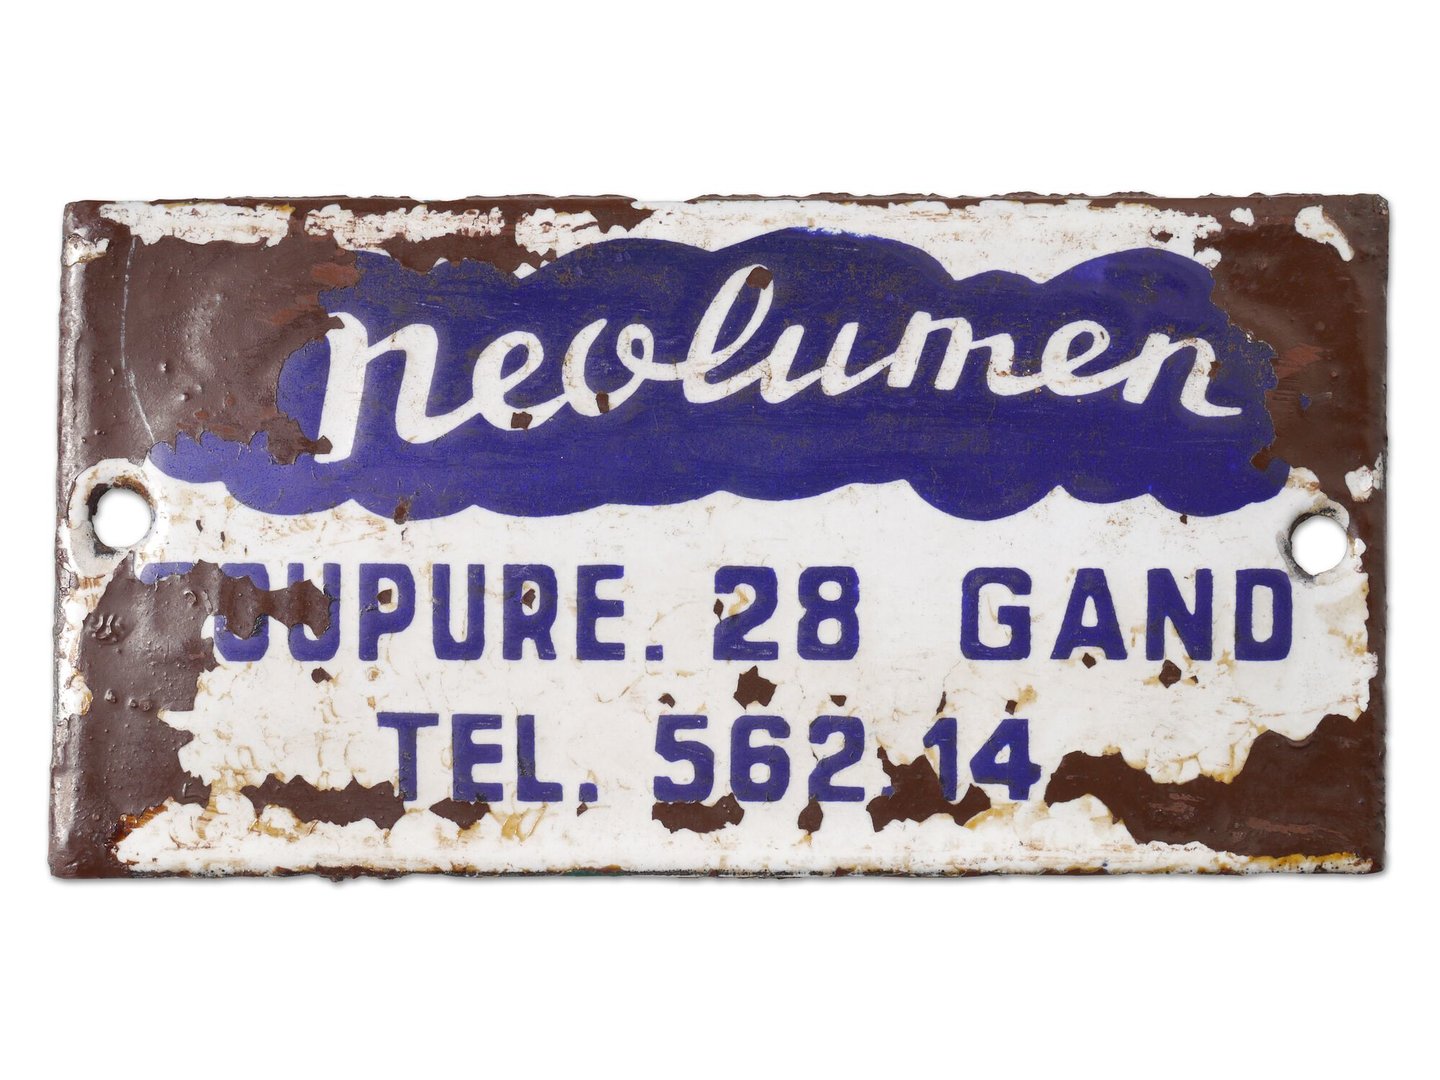 Geëmailleerd firmabord van Neolumen in Gent